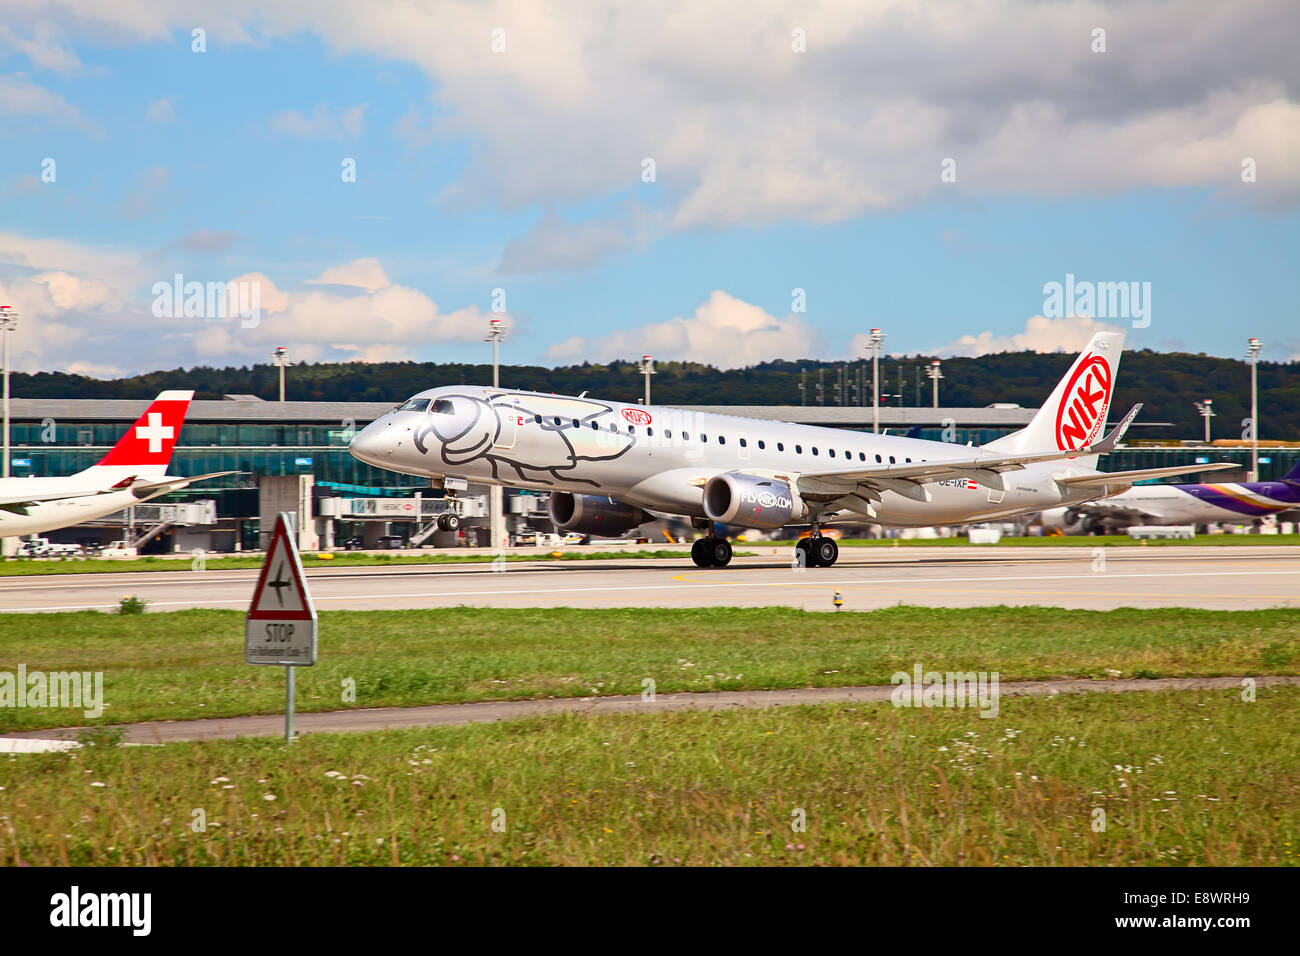 ZURICH - 21 septembre : Embraer du Niki autrichien qui décolle de l'aéroport de Zurich le 21 septembre 2014 à Zurich, Suisse. Zuric Banque D'Images